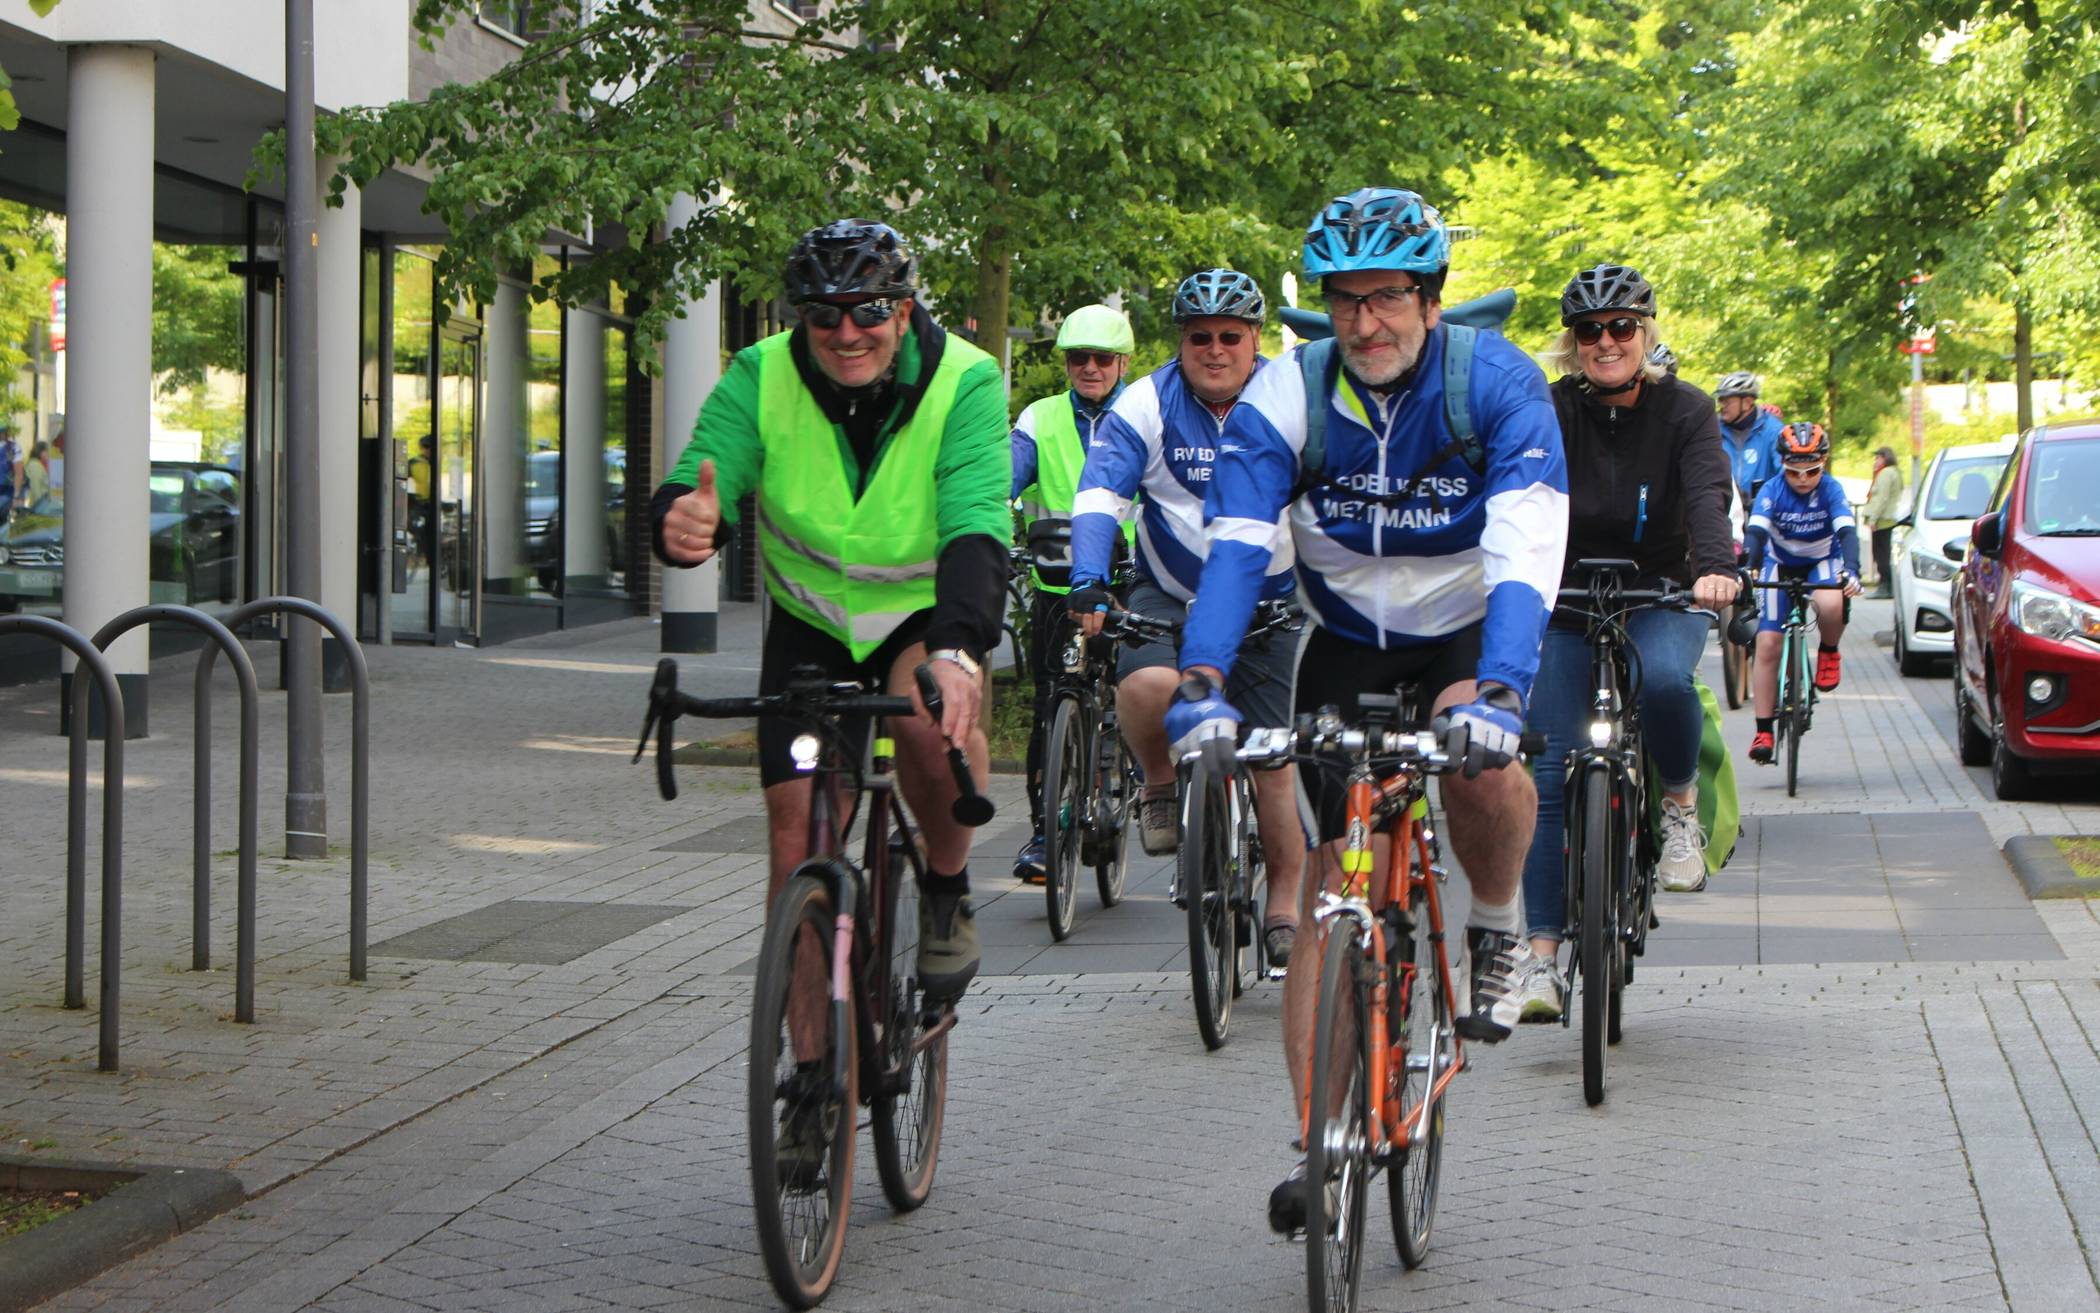  Rund 80 Radlerinnen und Radler nahmen an den drei Auftakttouren zum Stadtradeln teil.  
  